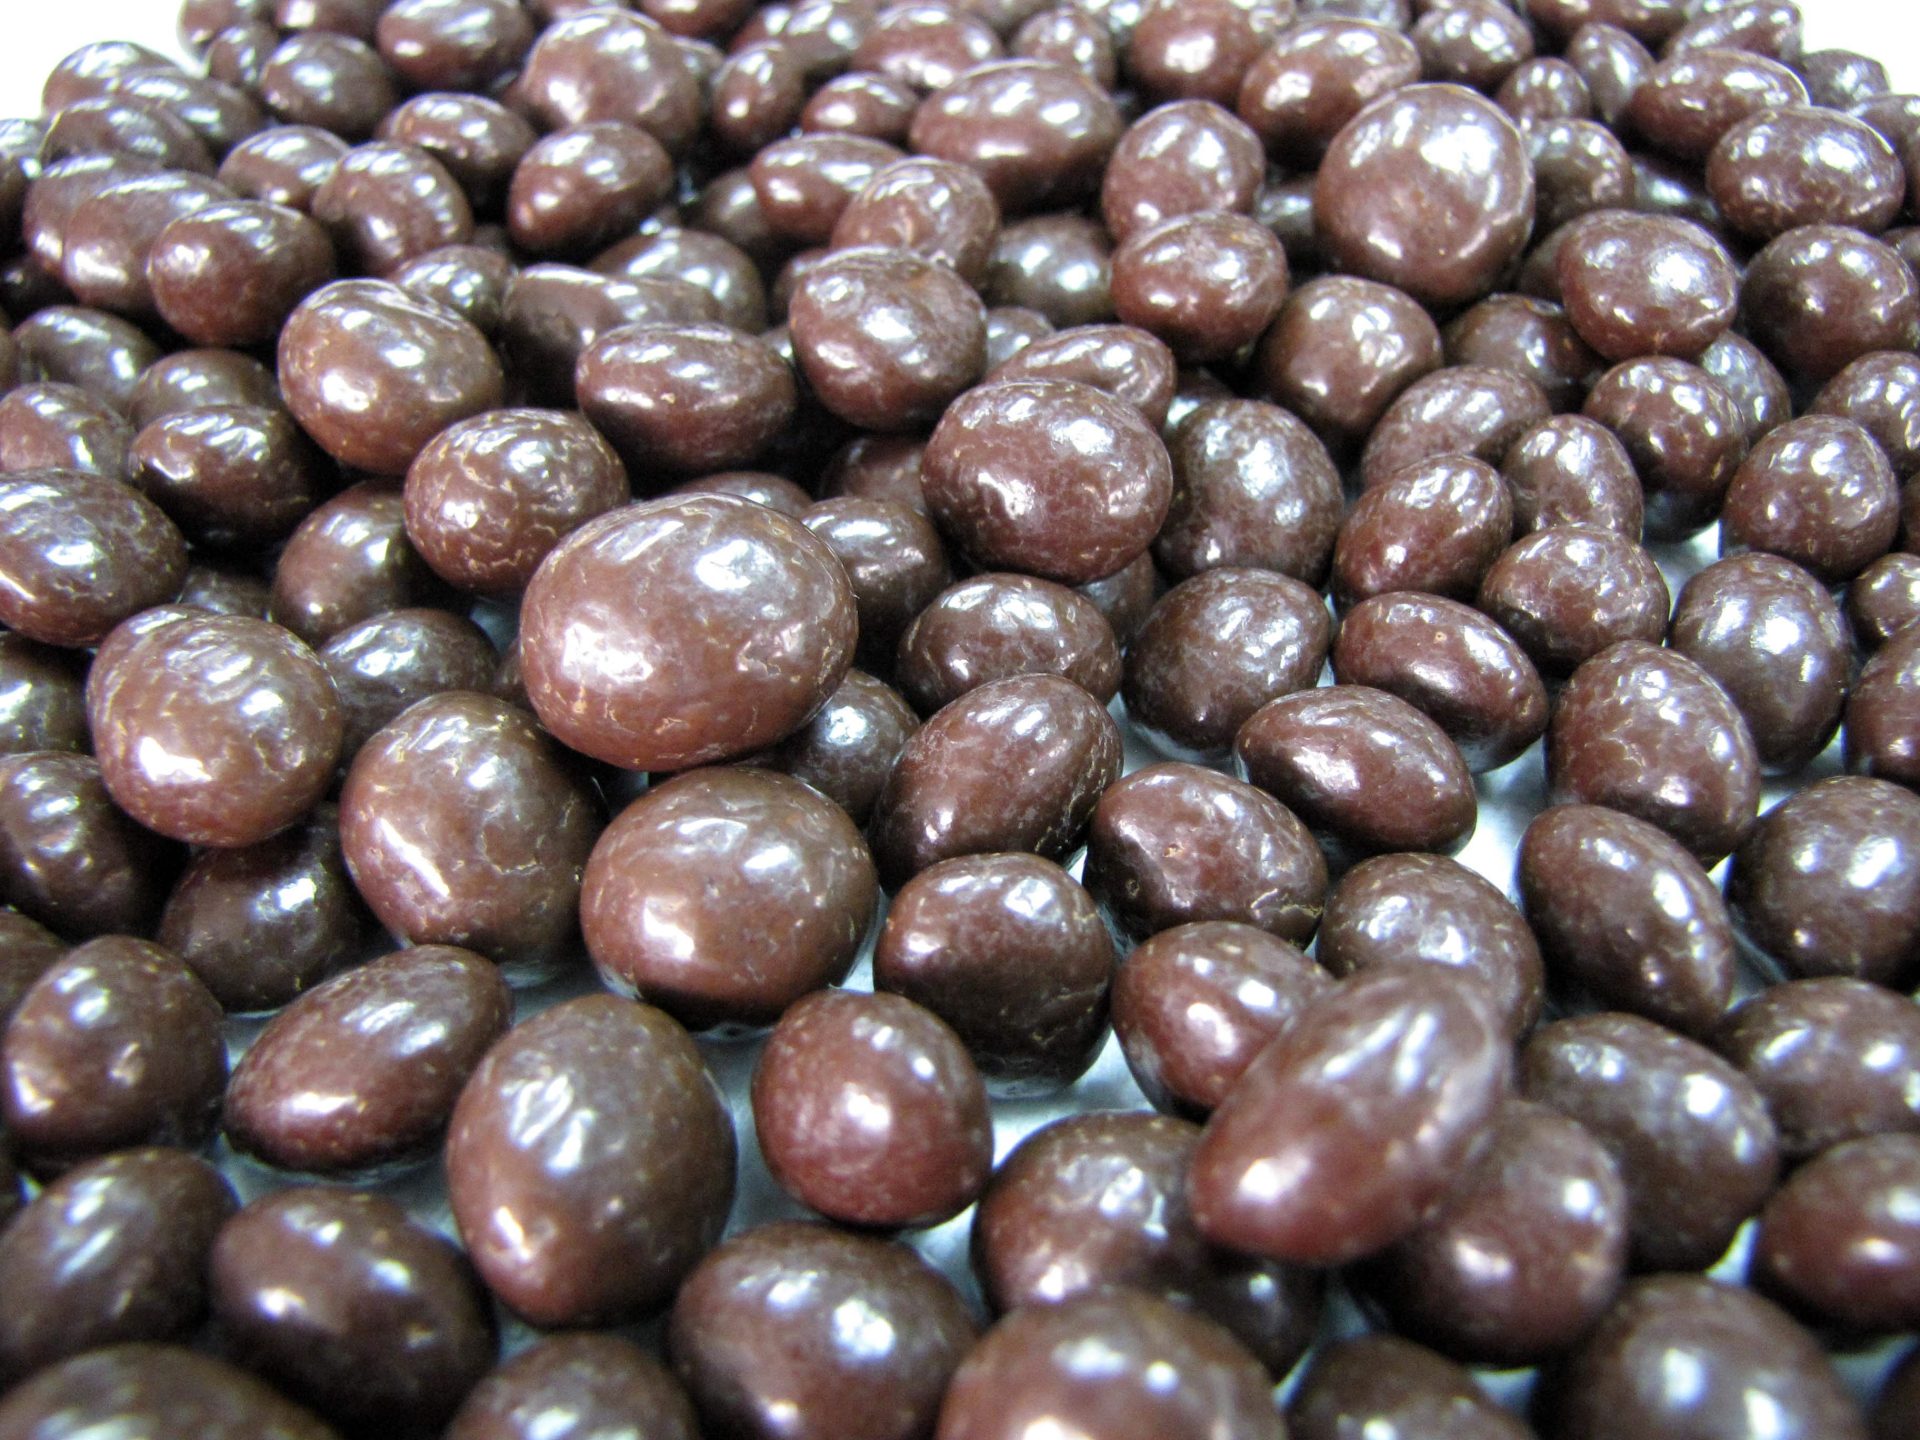 Imagen de unos chocolates en Ecuador, el mayor productor de cacao. EFE/César Muñoz